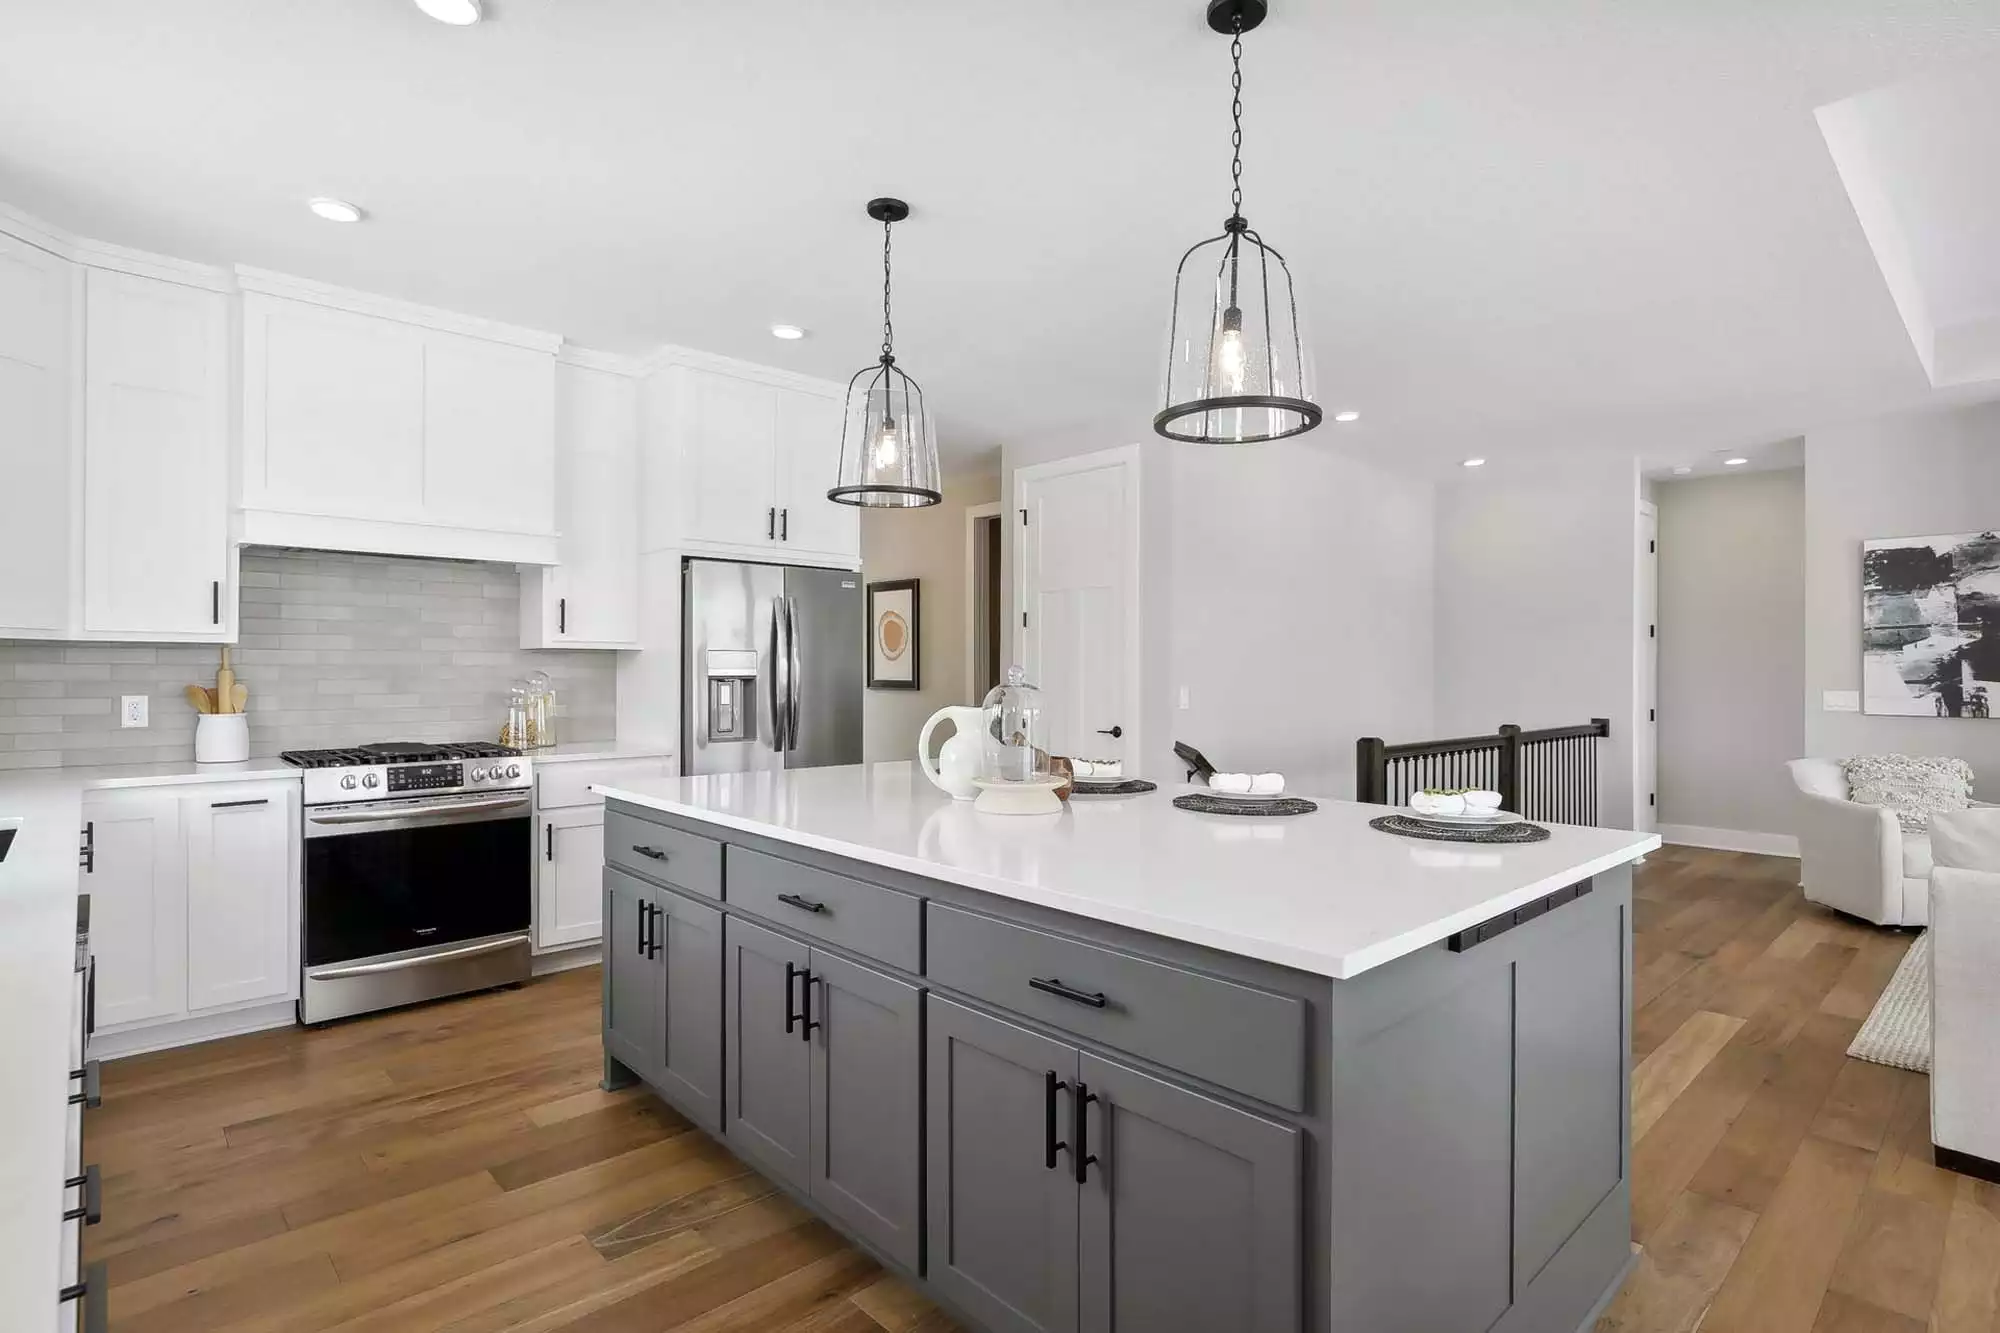 Kitchen island enameled grey cabinets